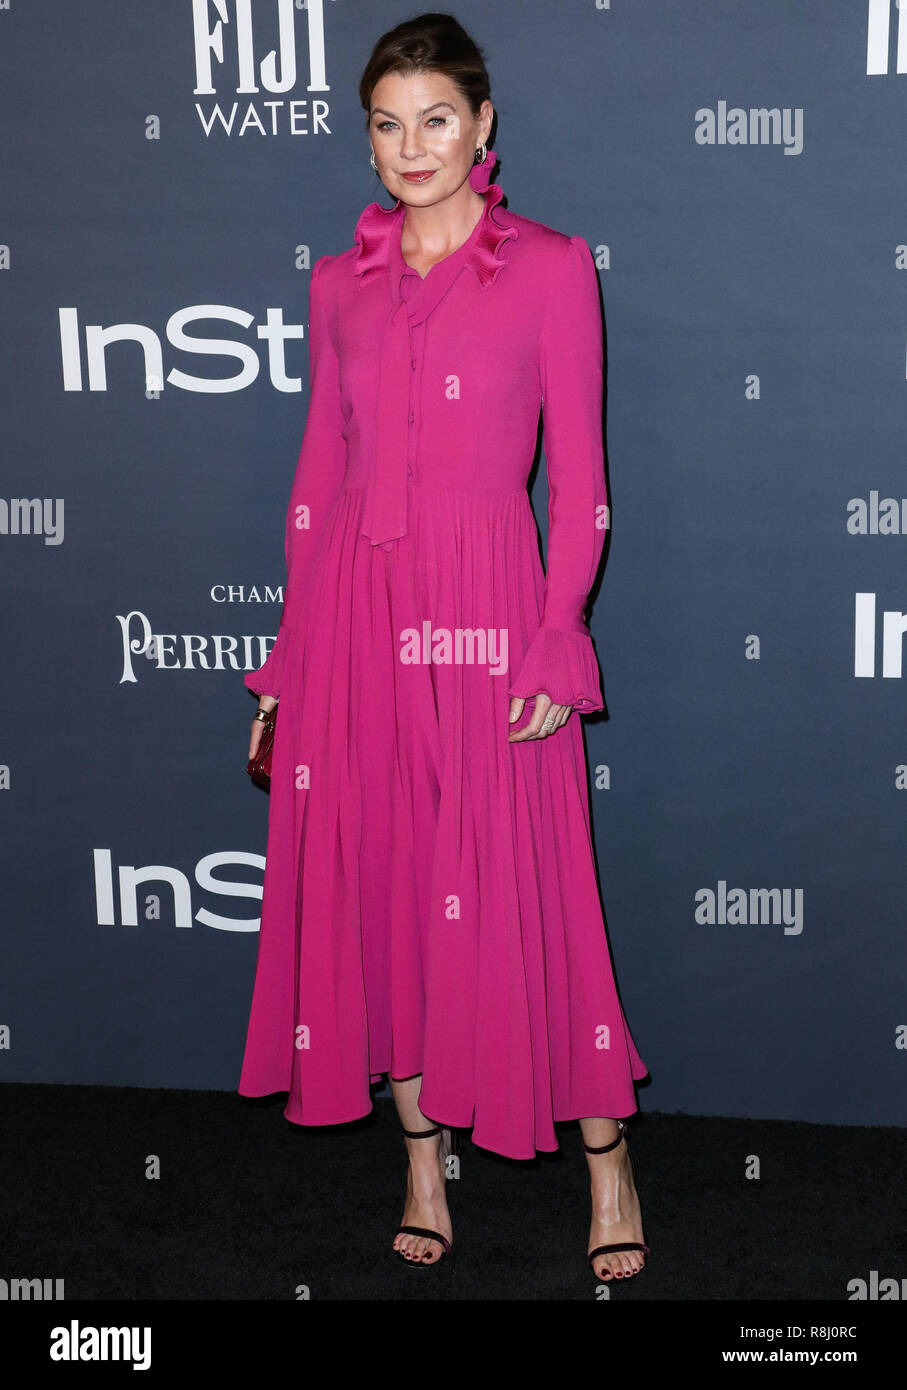 LOS ANGELES, Ca, USA - 23. Oktober: Ellen Pompeo auf der InStyle Awards im Getty Center am 23. Oktober 2017 in Los Angeles, Kalifornien, USA 2017. (Foto von Xavier Collin/Image Press Agency) Stockfoto